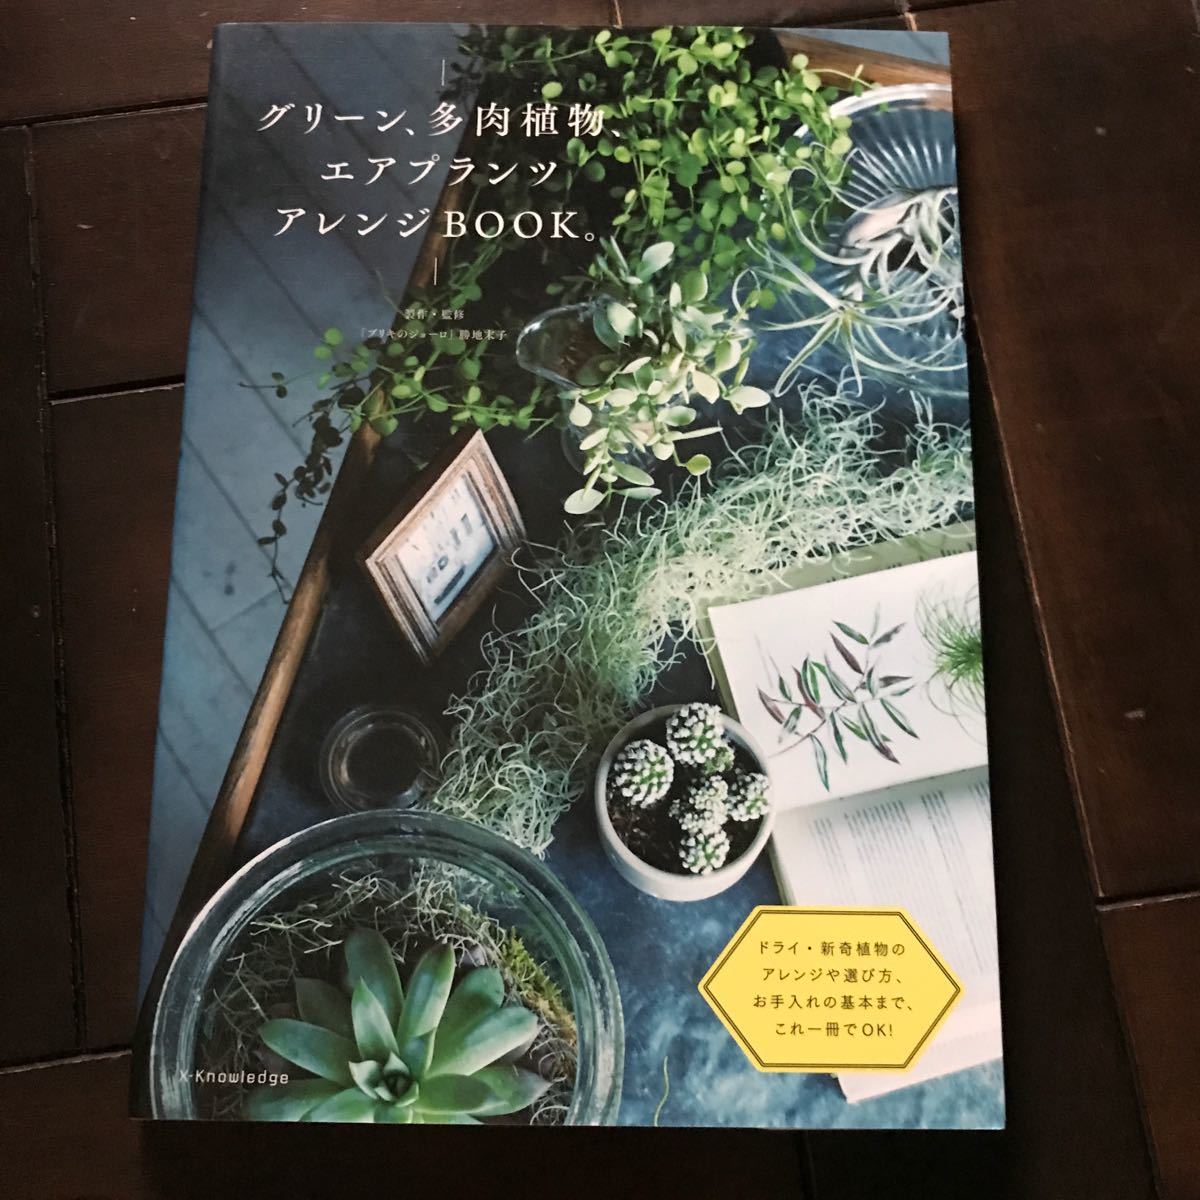  зеленый, суккулентное растение, воздушный растения организовать BOOK! включая налог 1650 иен! первая версия книга@! с лентой! letter pack почтовый сервис 370!. земля конец .